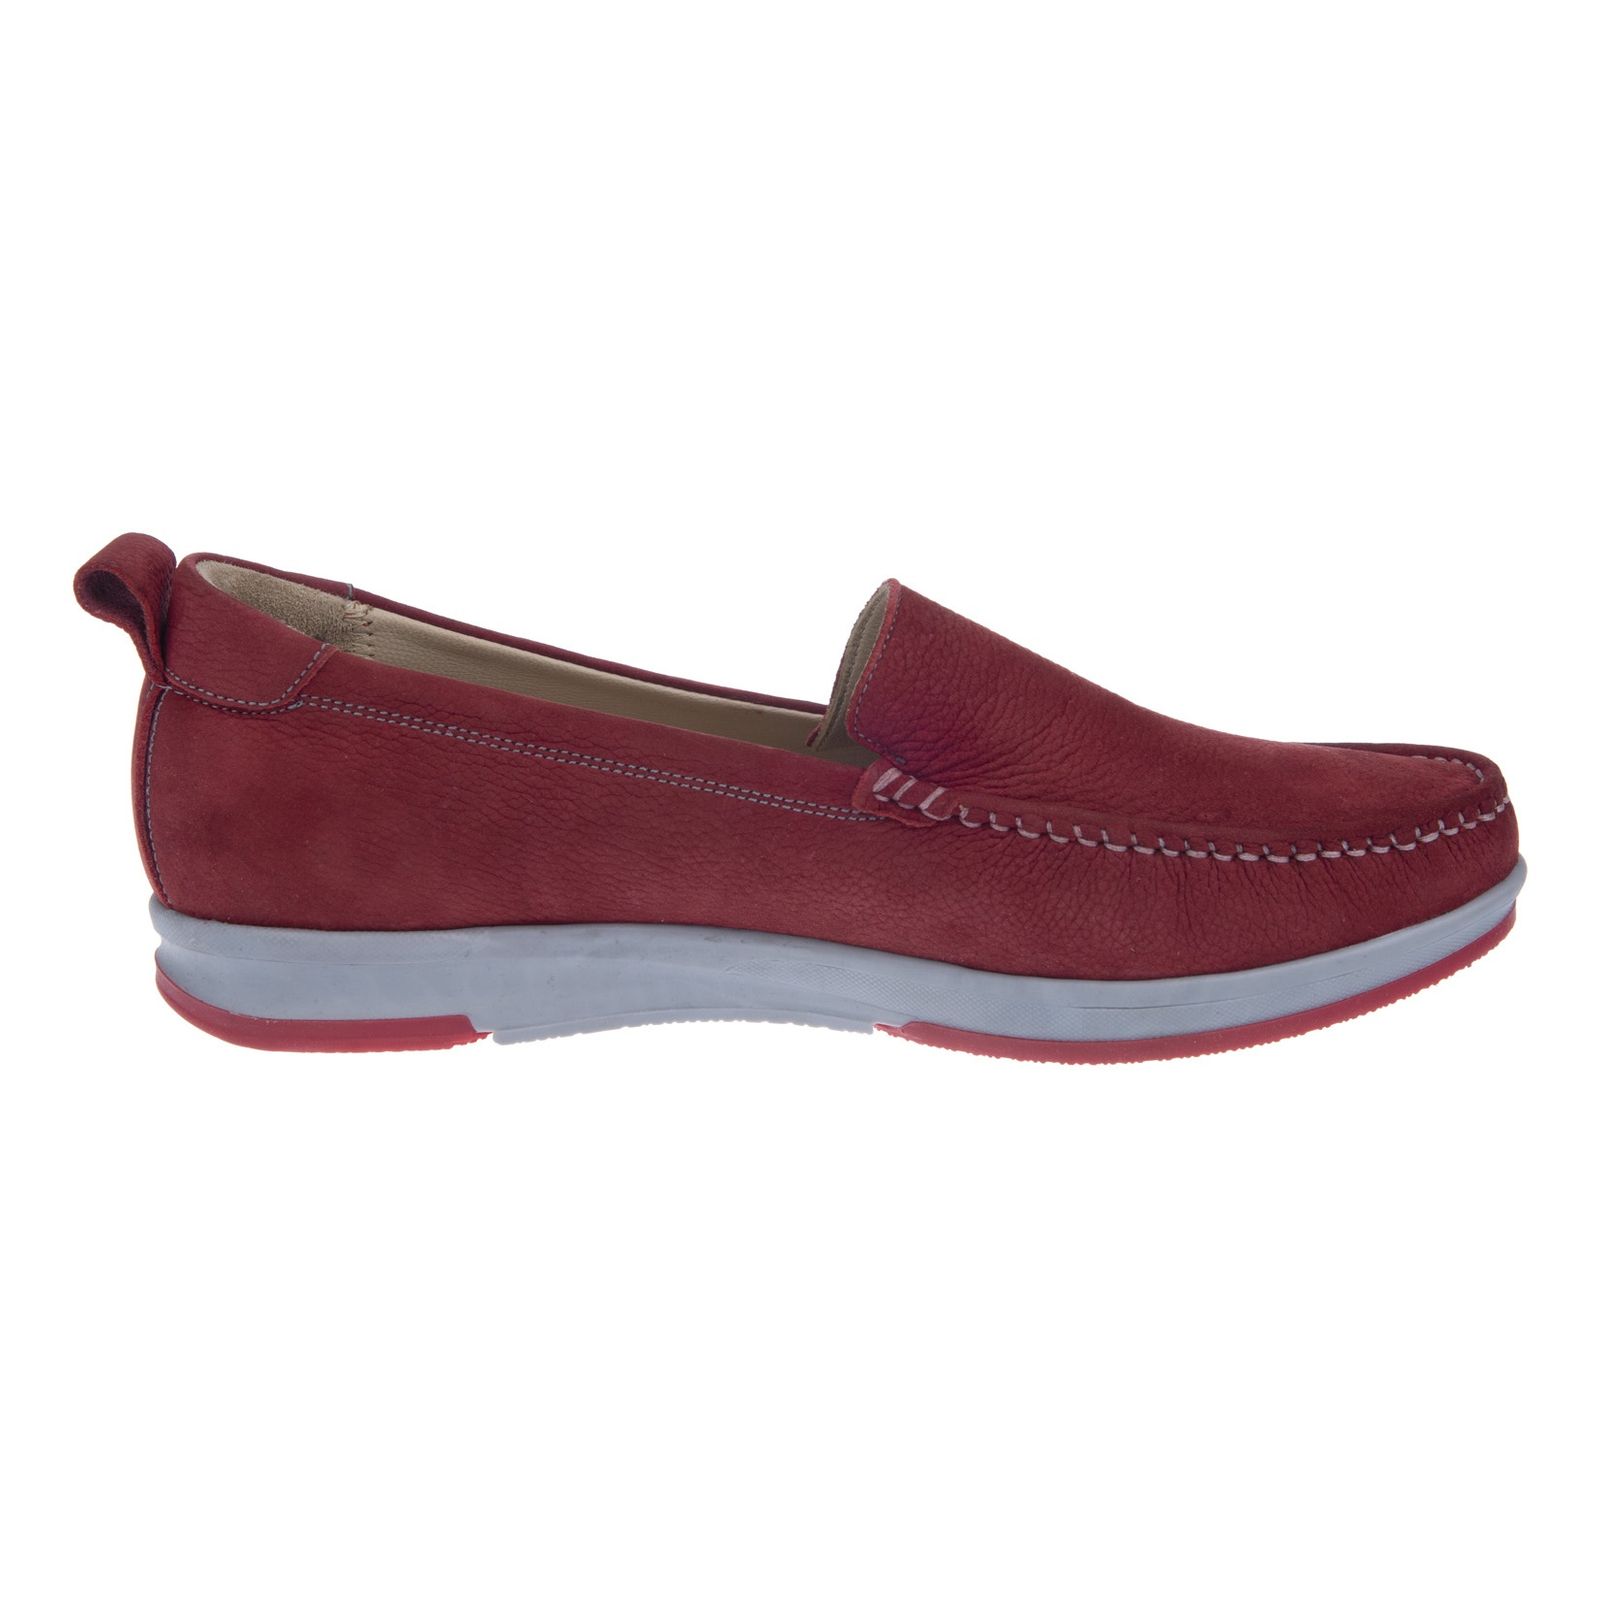 کفش روزمره زنانه برتونیکس مدل 380-24 - قرمز - 6